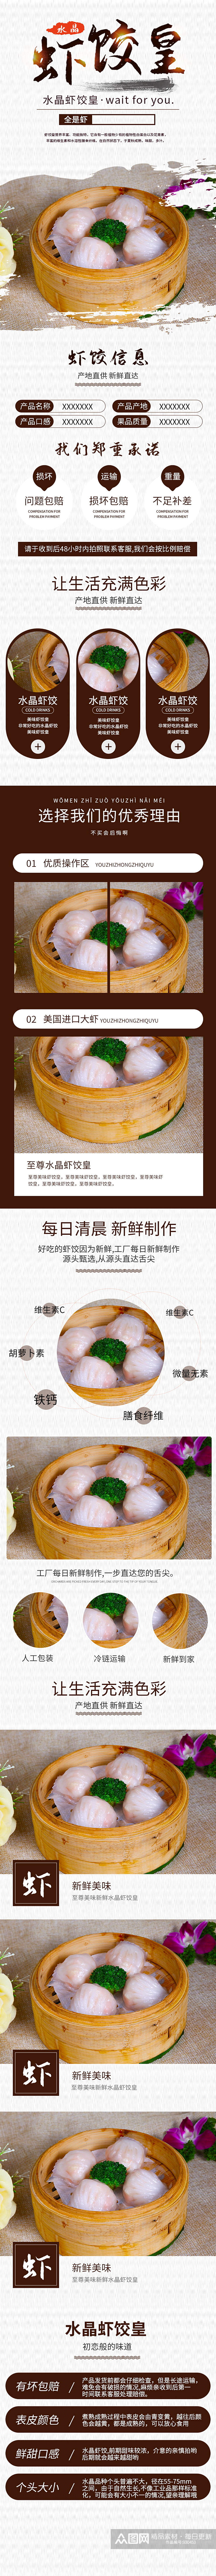 虾饺皇水晶美食食品特色详情页素材